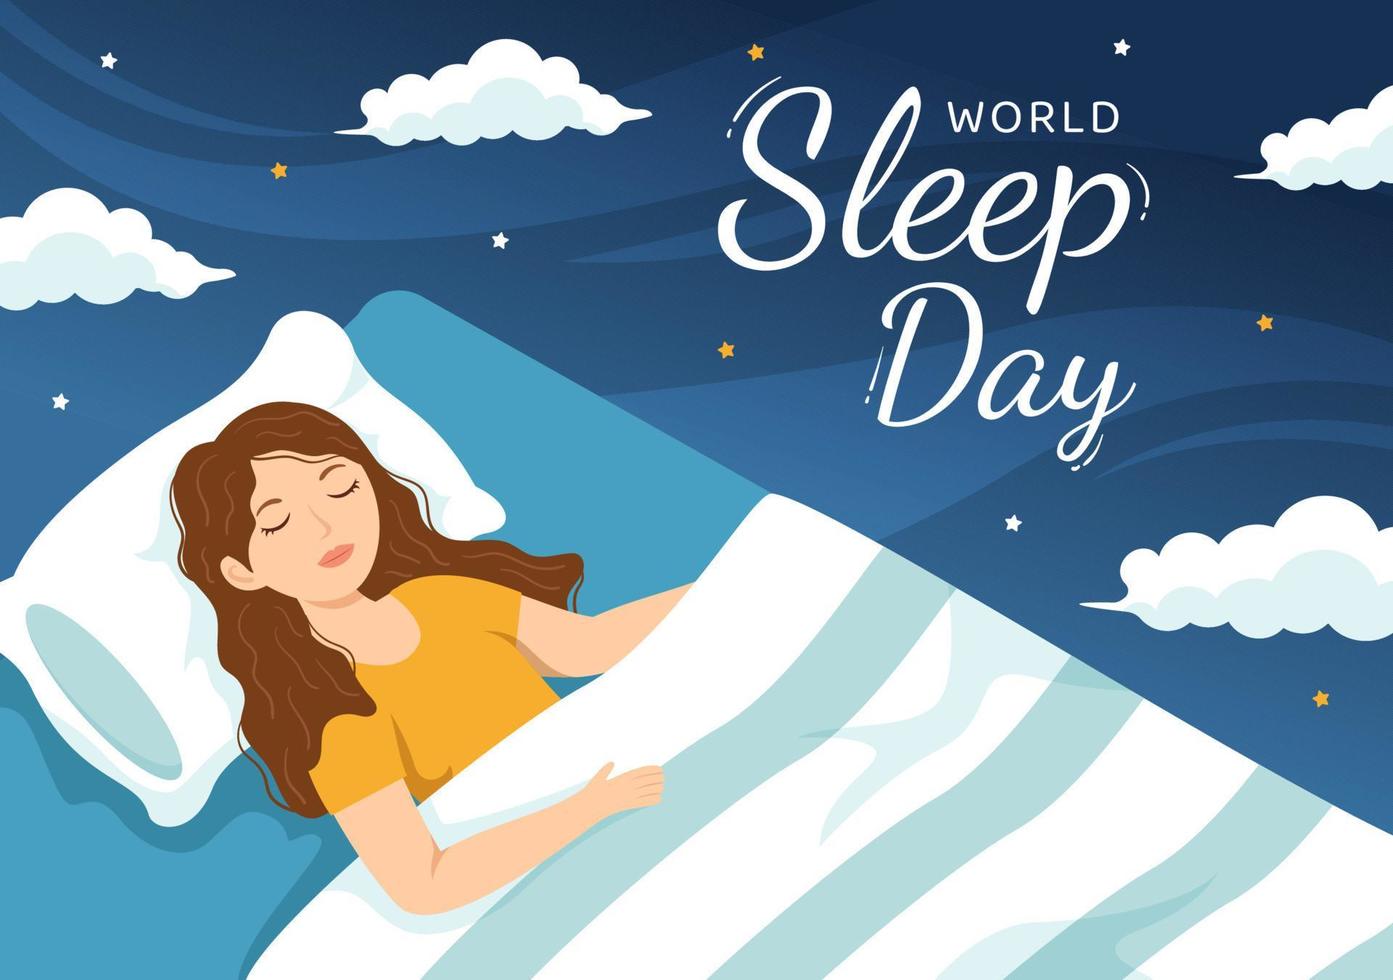 mondo dormire giorno su marzo 17 illustrazione con persone addormentato e pianeta terra nel cielo sfondi piatto cartone animato mano disegnato per atterraggio pagina modelli vettore